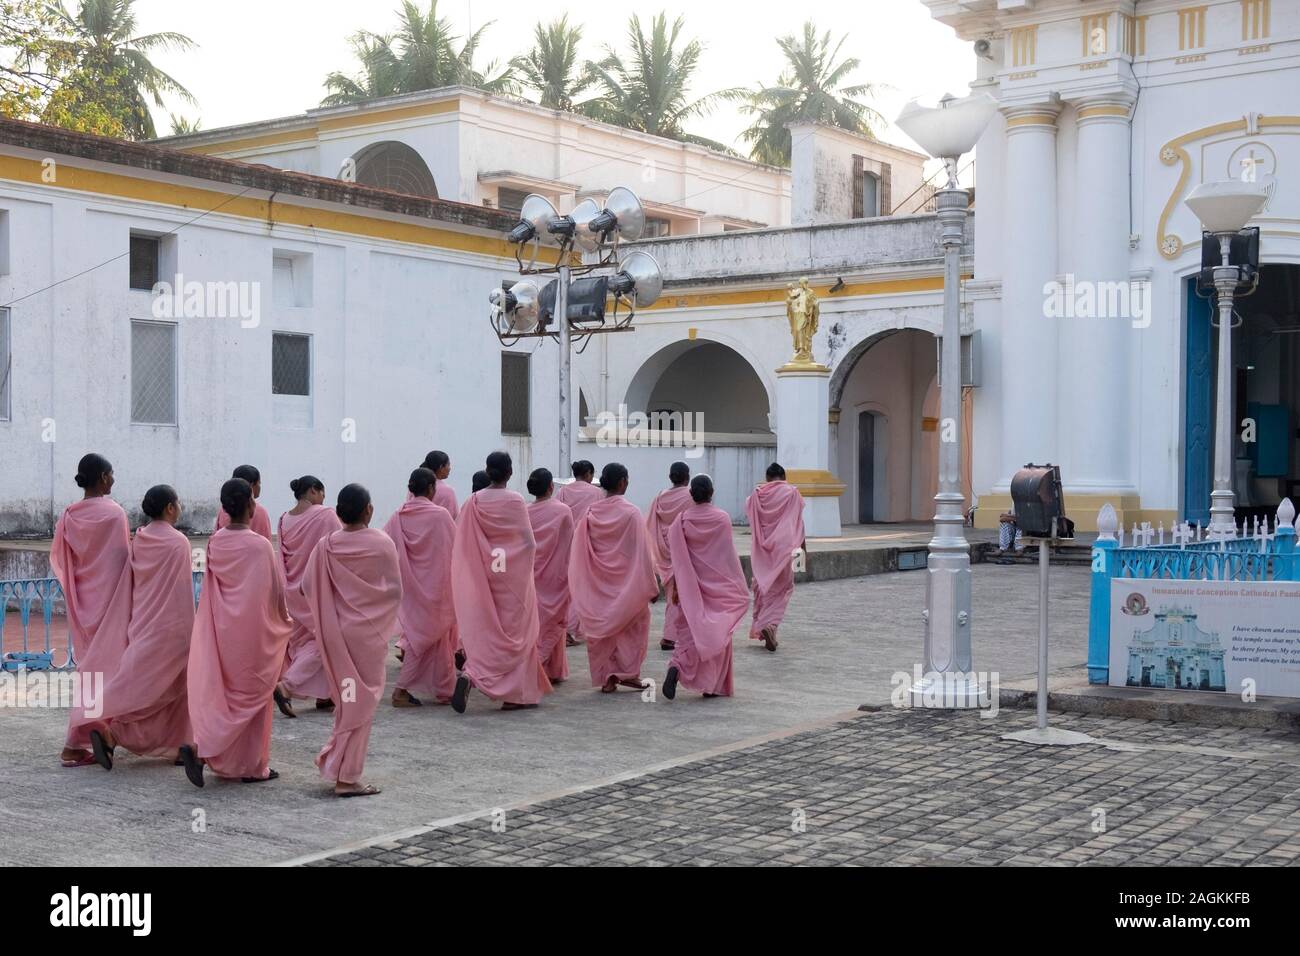 Vue arrière des moniales sur leur chemin dans le Notre Dame de l'Immaculée Conception Cathédrale à Puducherry, Tamil Nadu, Inde Banque D'Images